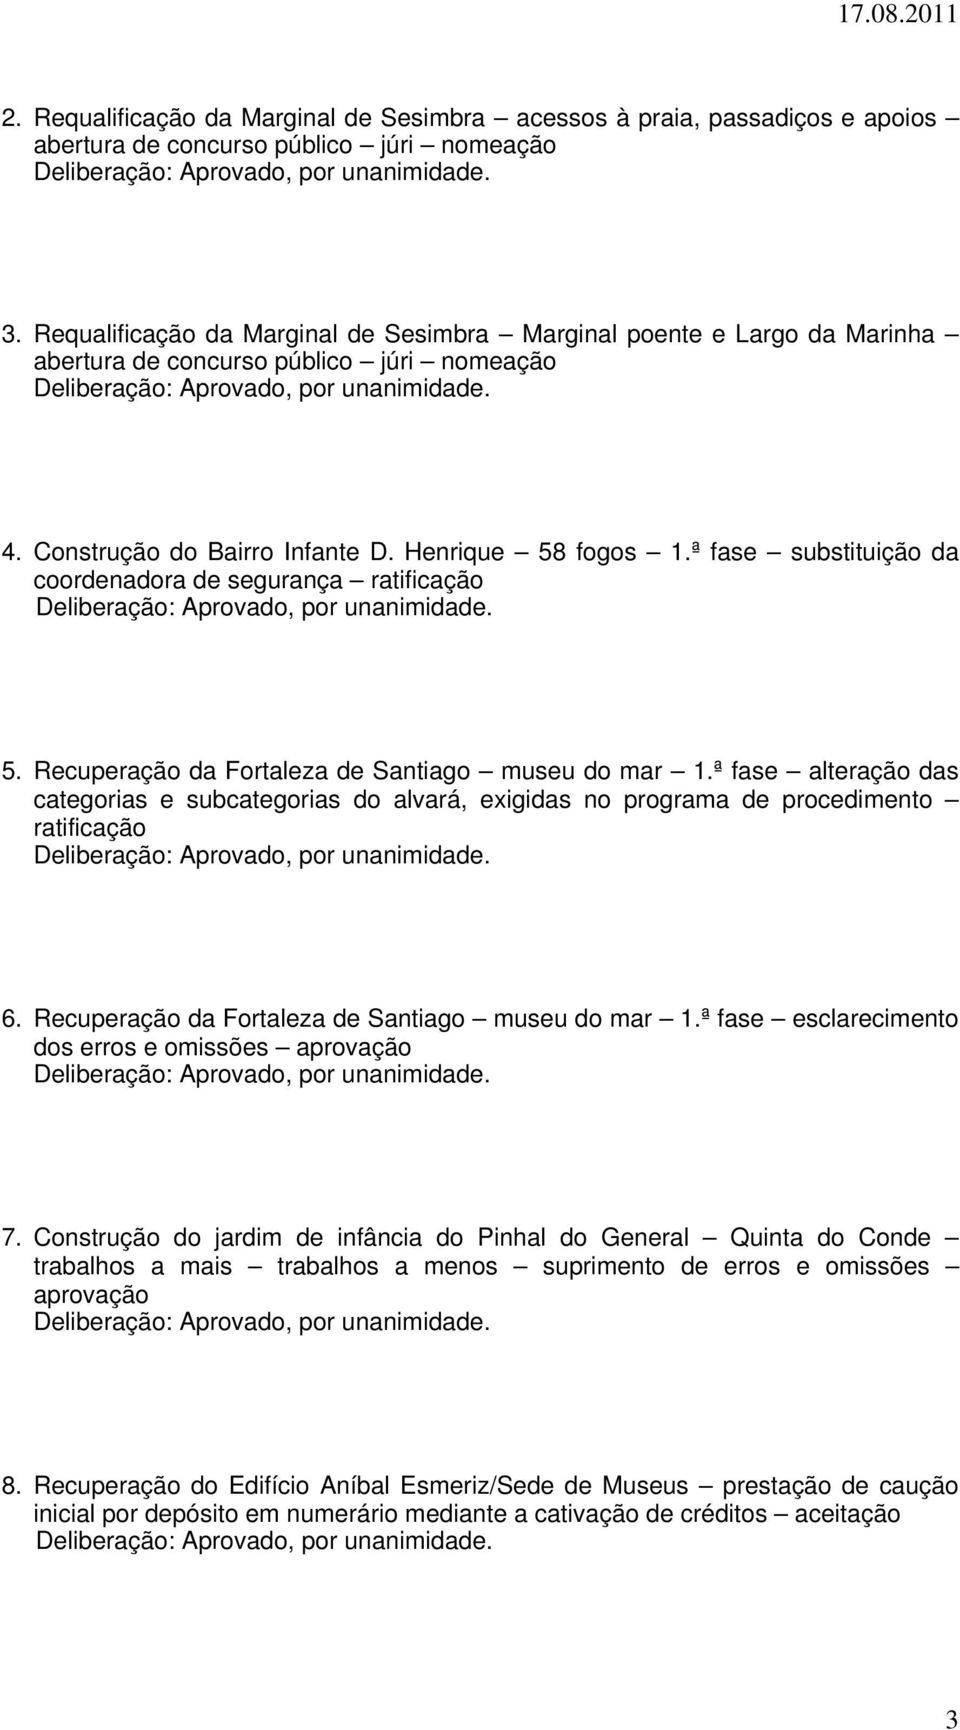 ª fase substituição da coordenadora de segurança ratificação 5. Recuperação da Fortaleza de Santiago museu do mar 1.